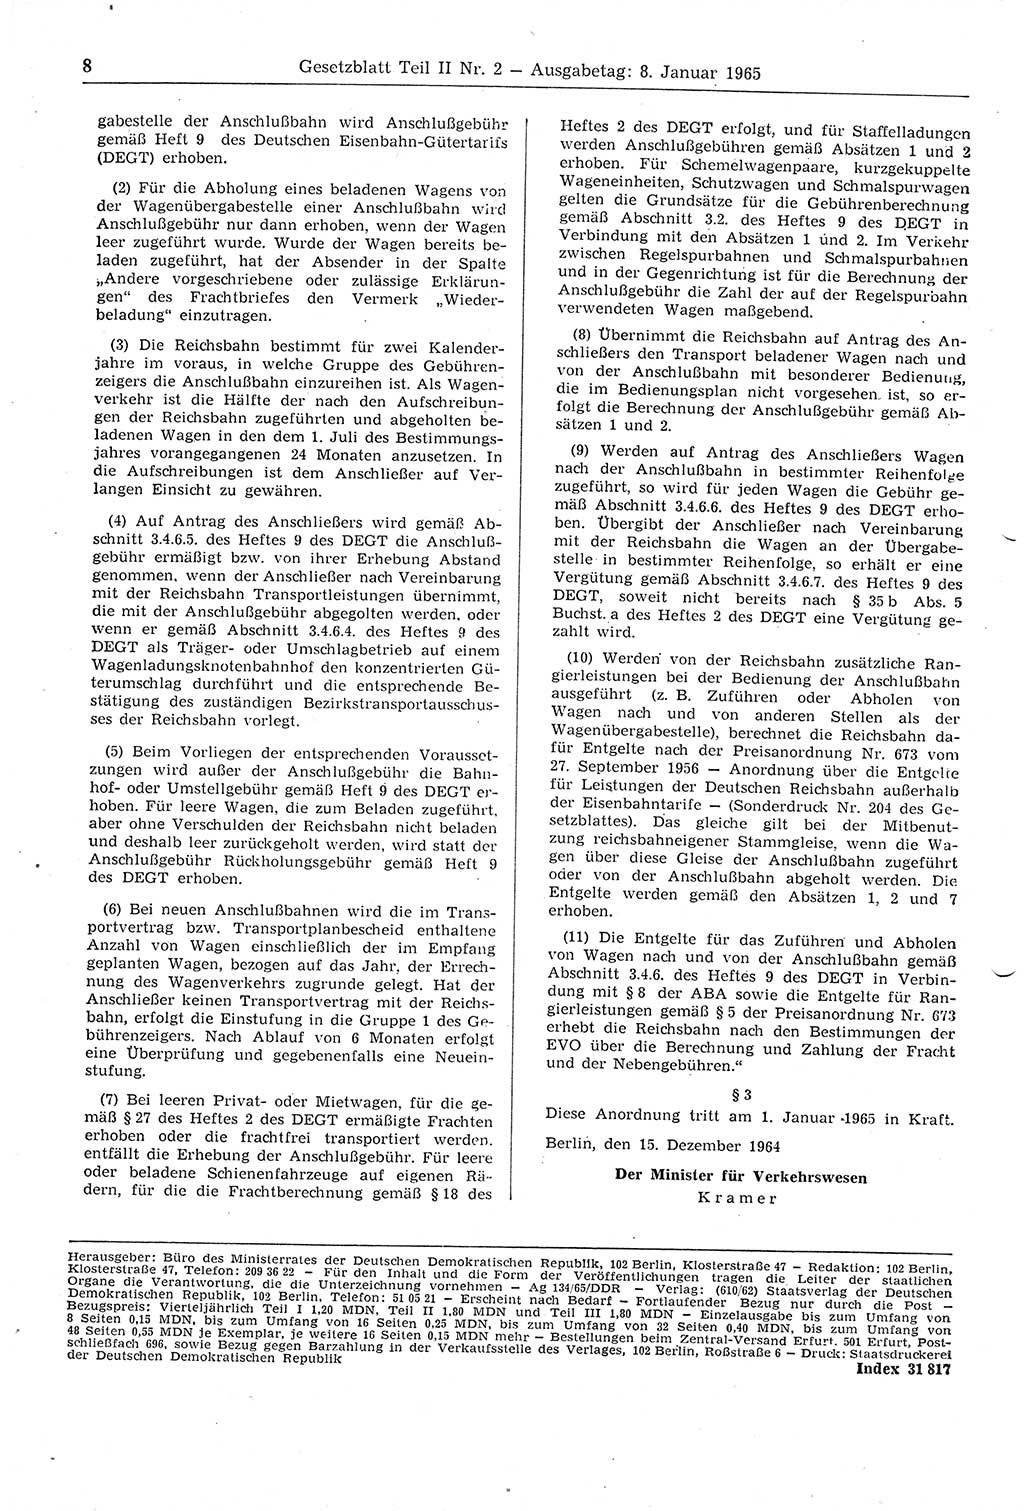 Gesetzblatt (GBl.) der Deutschen Demokratischen Republik (DDR) Teil ⅠⅠ 1965, Seite 8 (GBl. DDR ⅠⅠ 1965, S. 8)